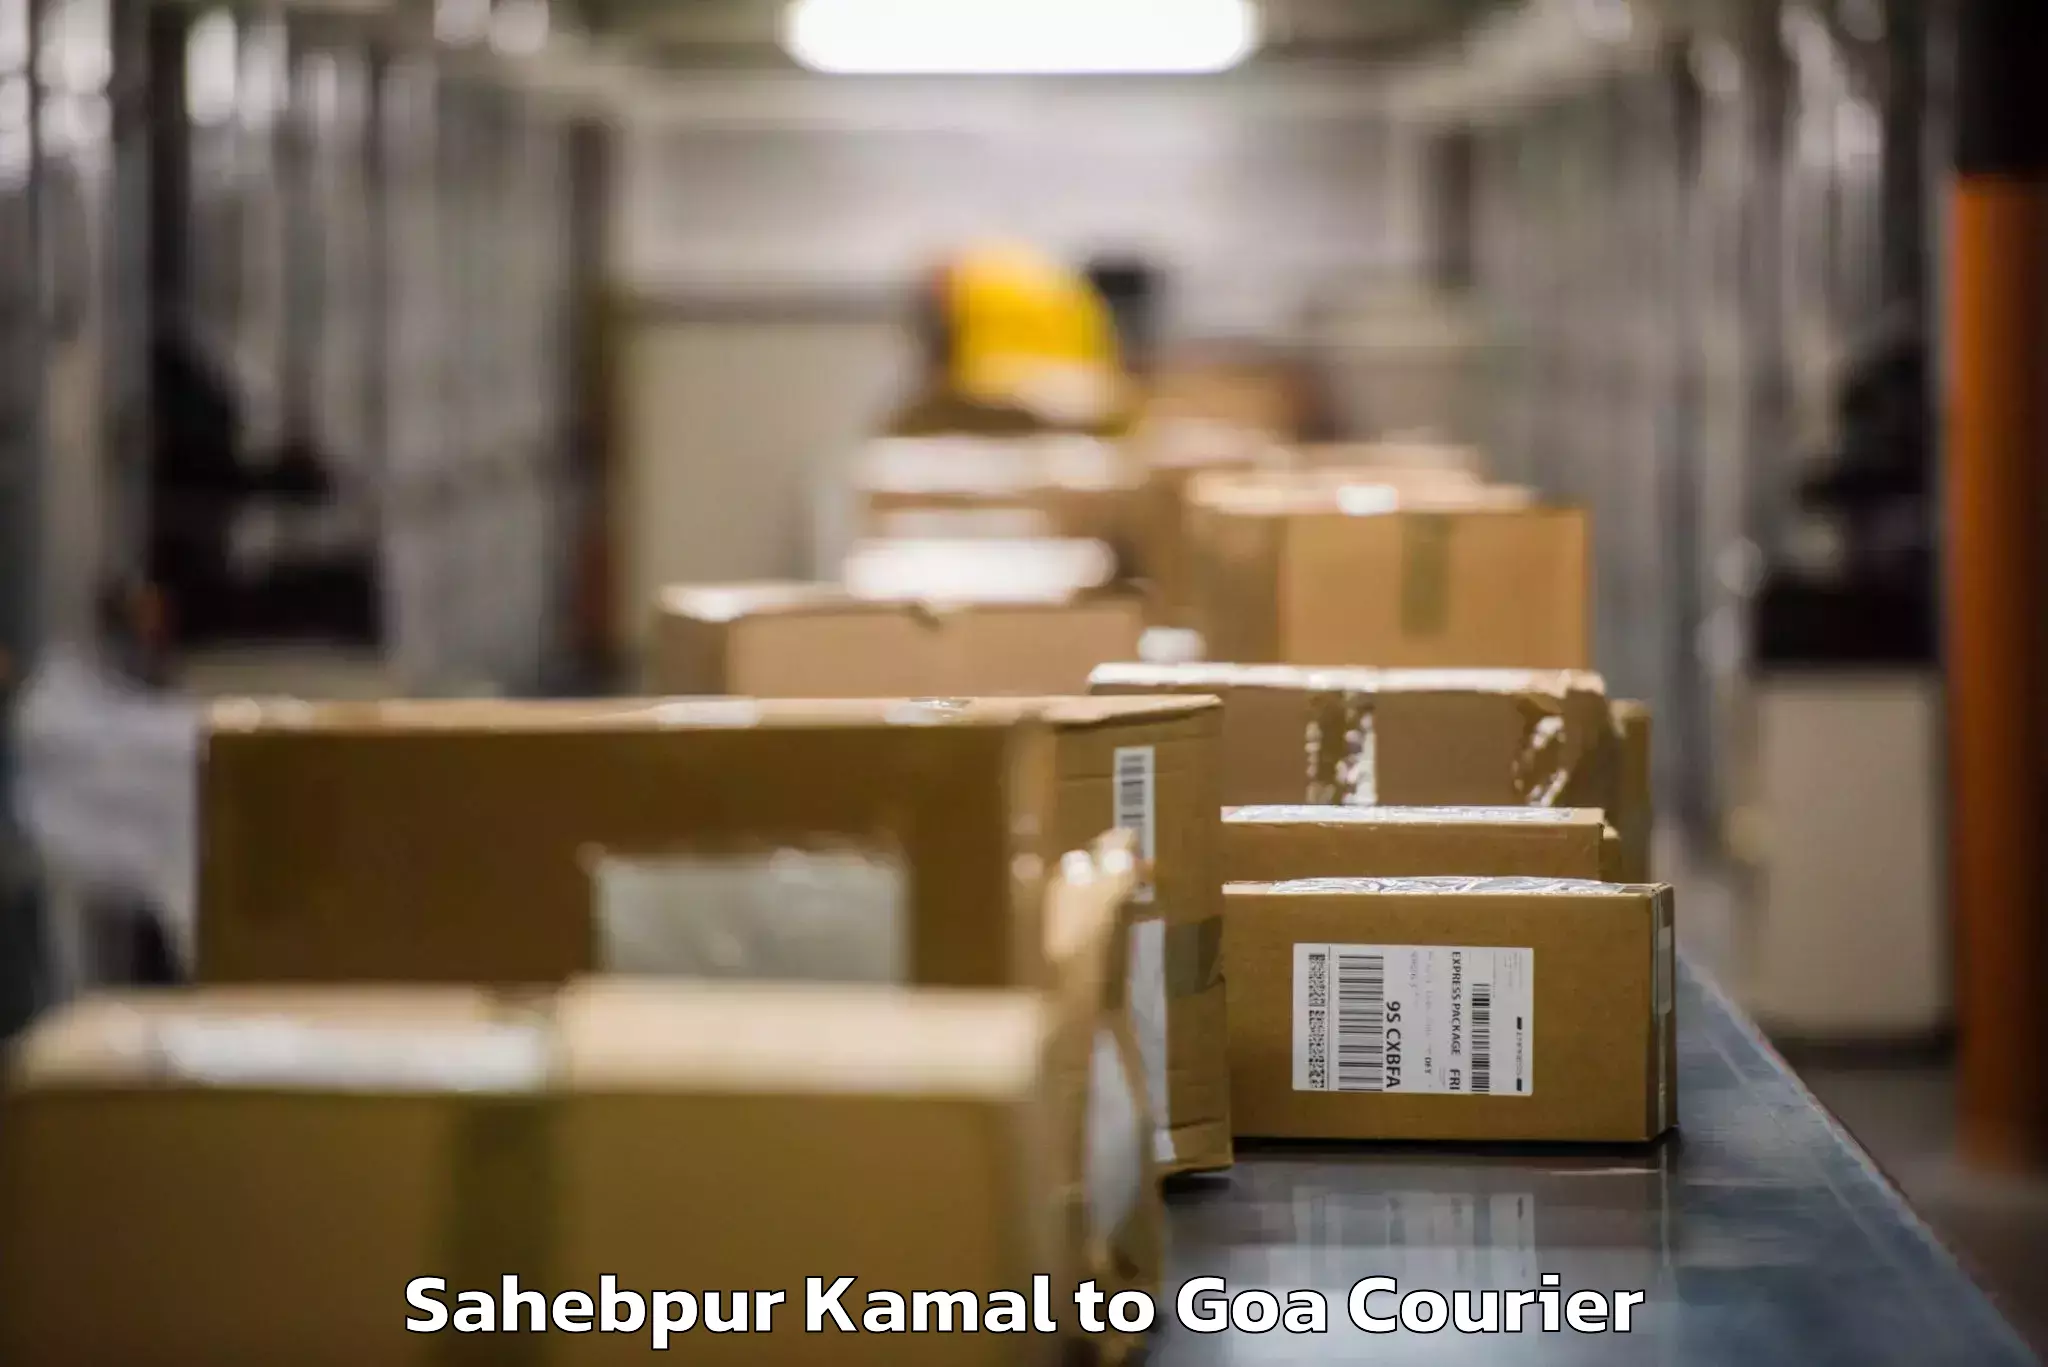 Baggage shipping experts Sahebpur Kamal to Sanvordem